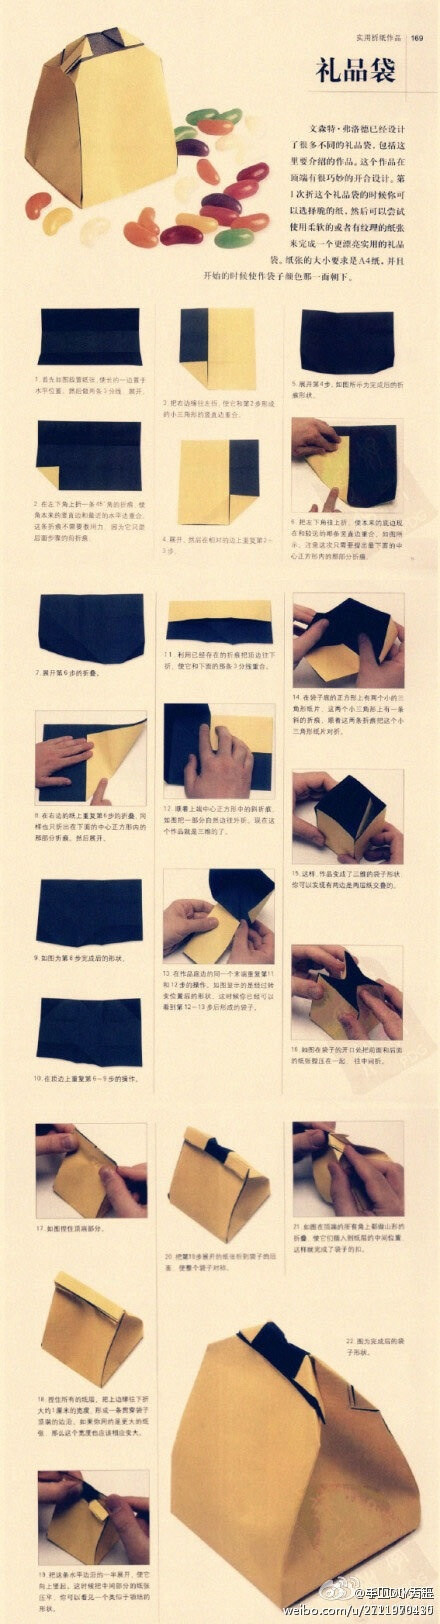 纸袋手工制作 步骤图片